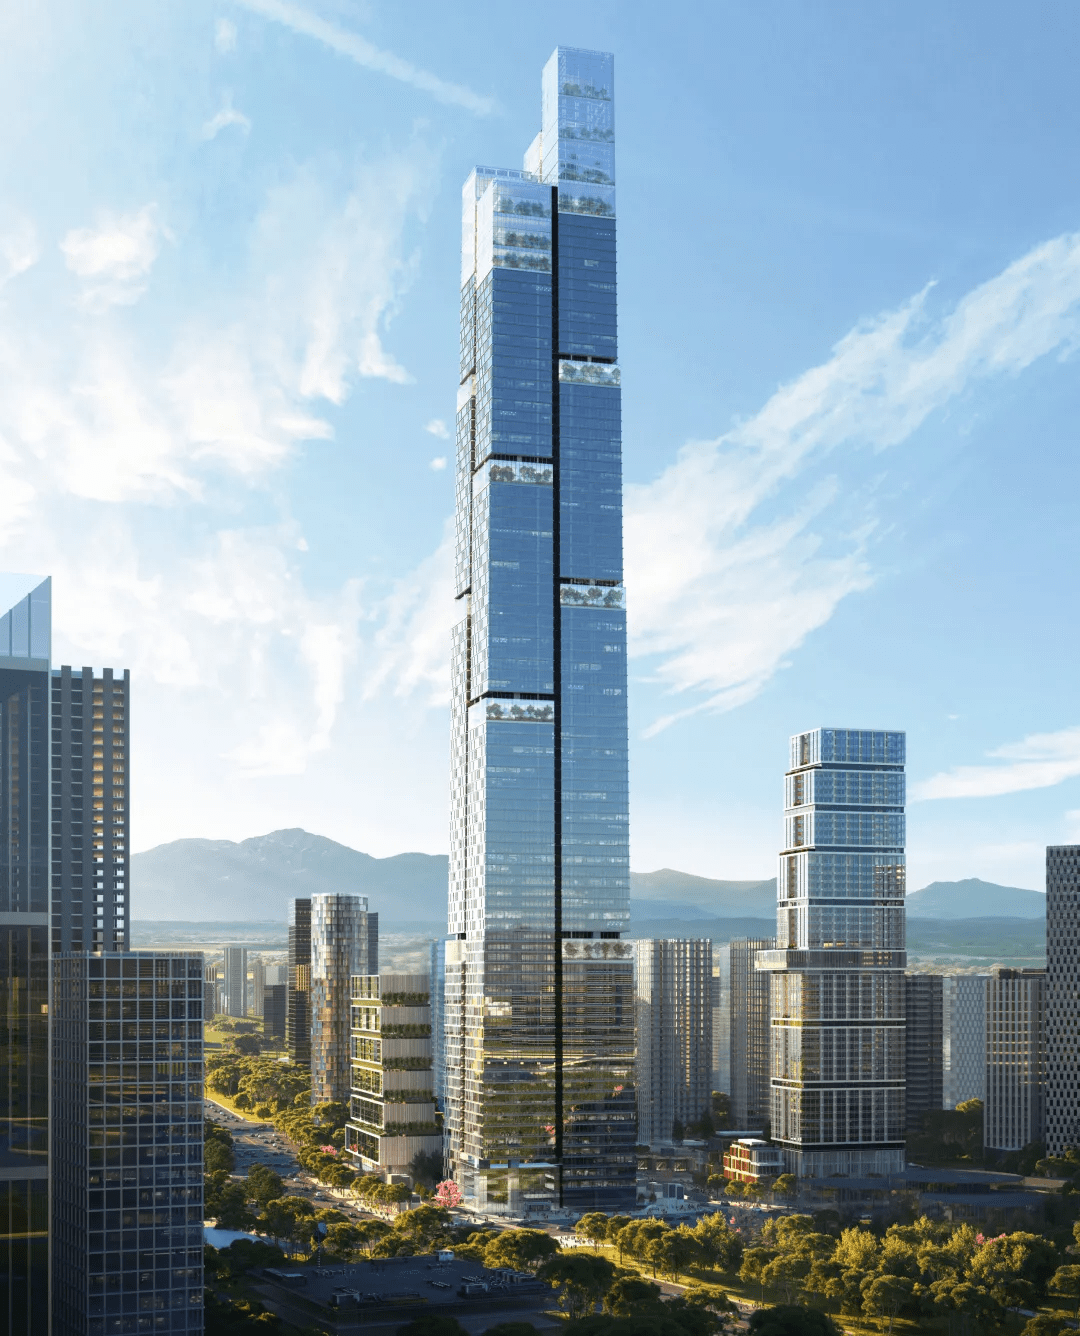 原创高489米!成都未来第一高楼正式开工,设计以"山"为意象